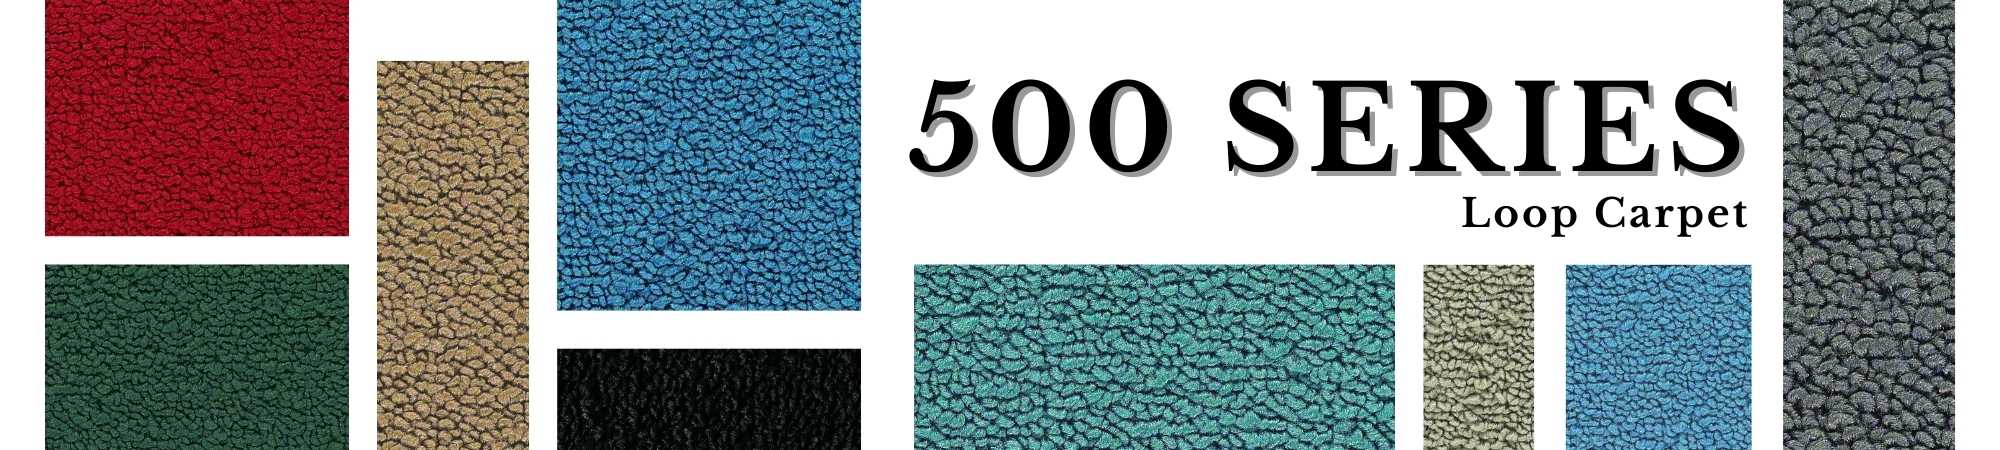 500 Series 80/20 Loop Carpet